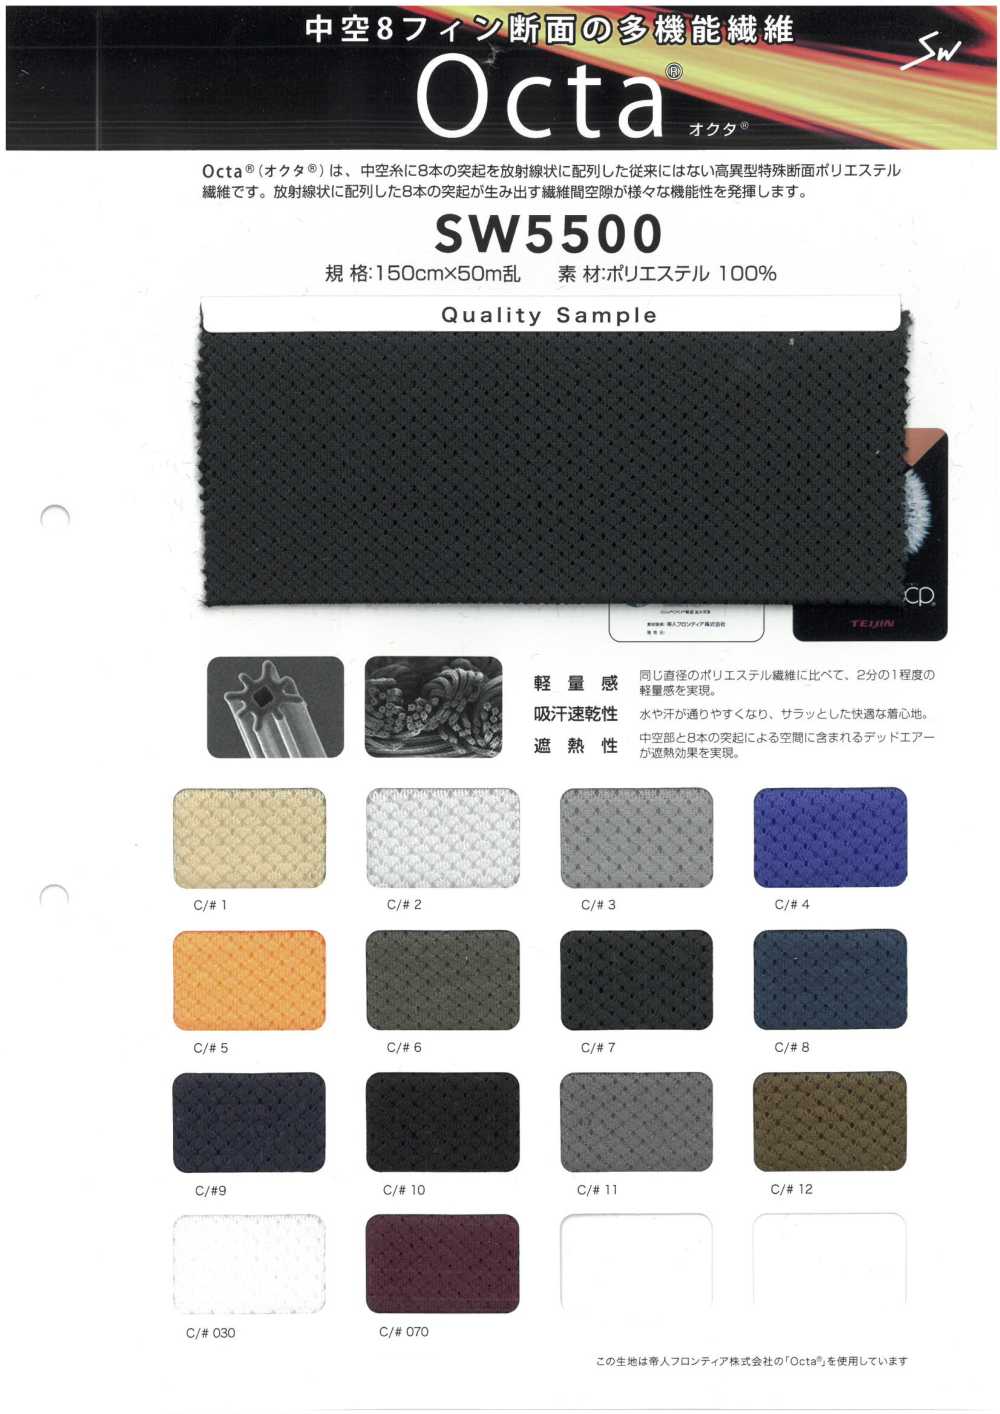 SW5500 Octa® 옥타®[원단] 삼화섬유